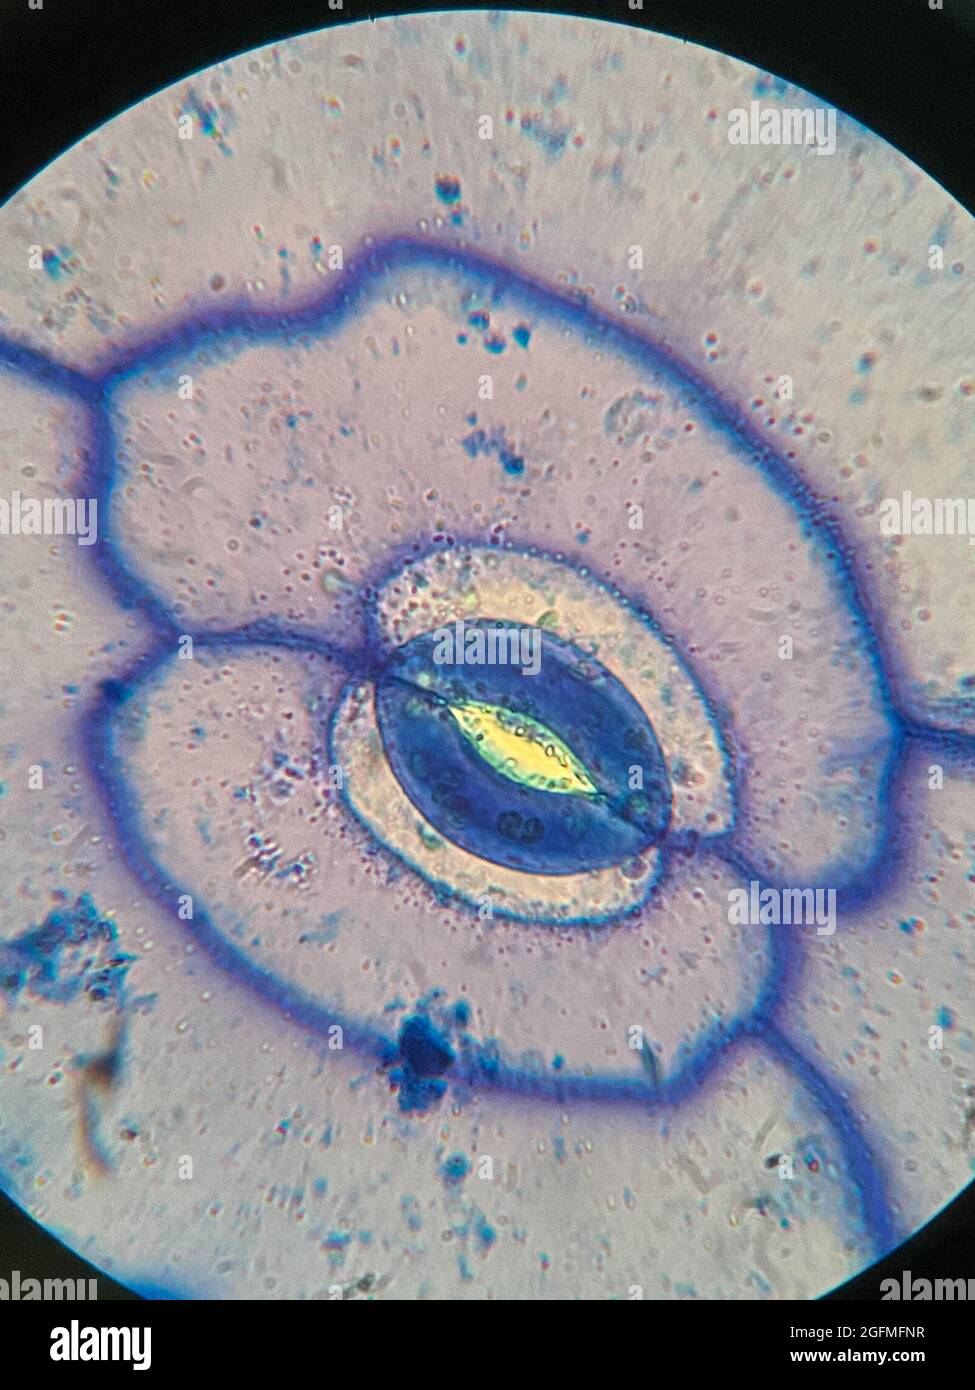 Mikroskopische Aufnahme von Stomata auf dem Blatt der Portulaca oleracea Pflanze Stockfoto